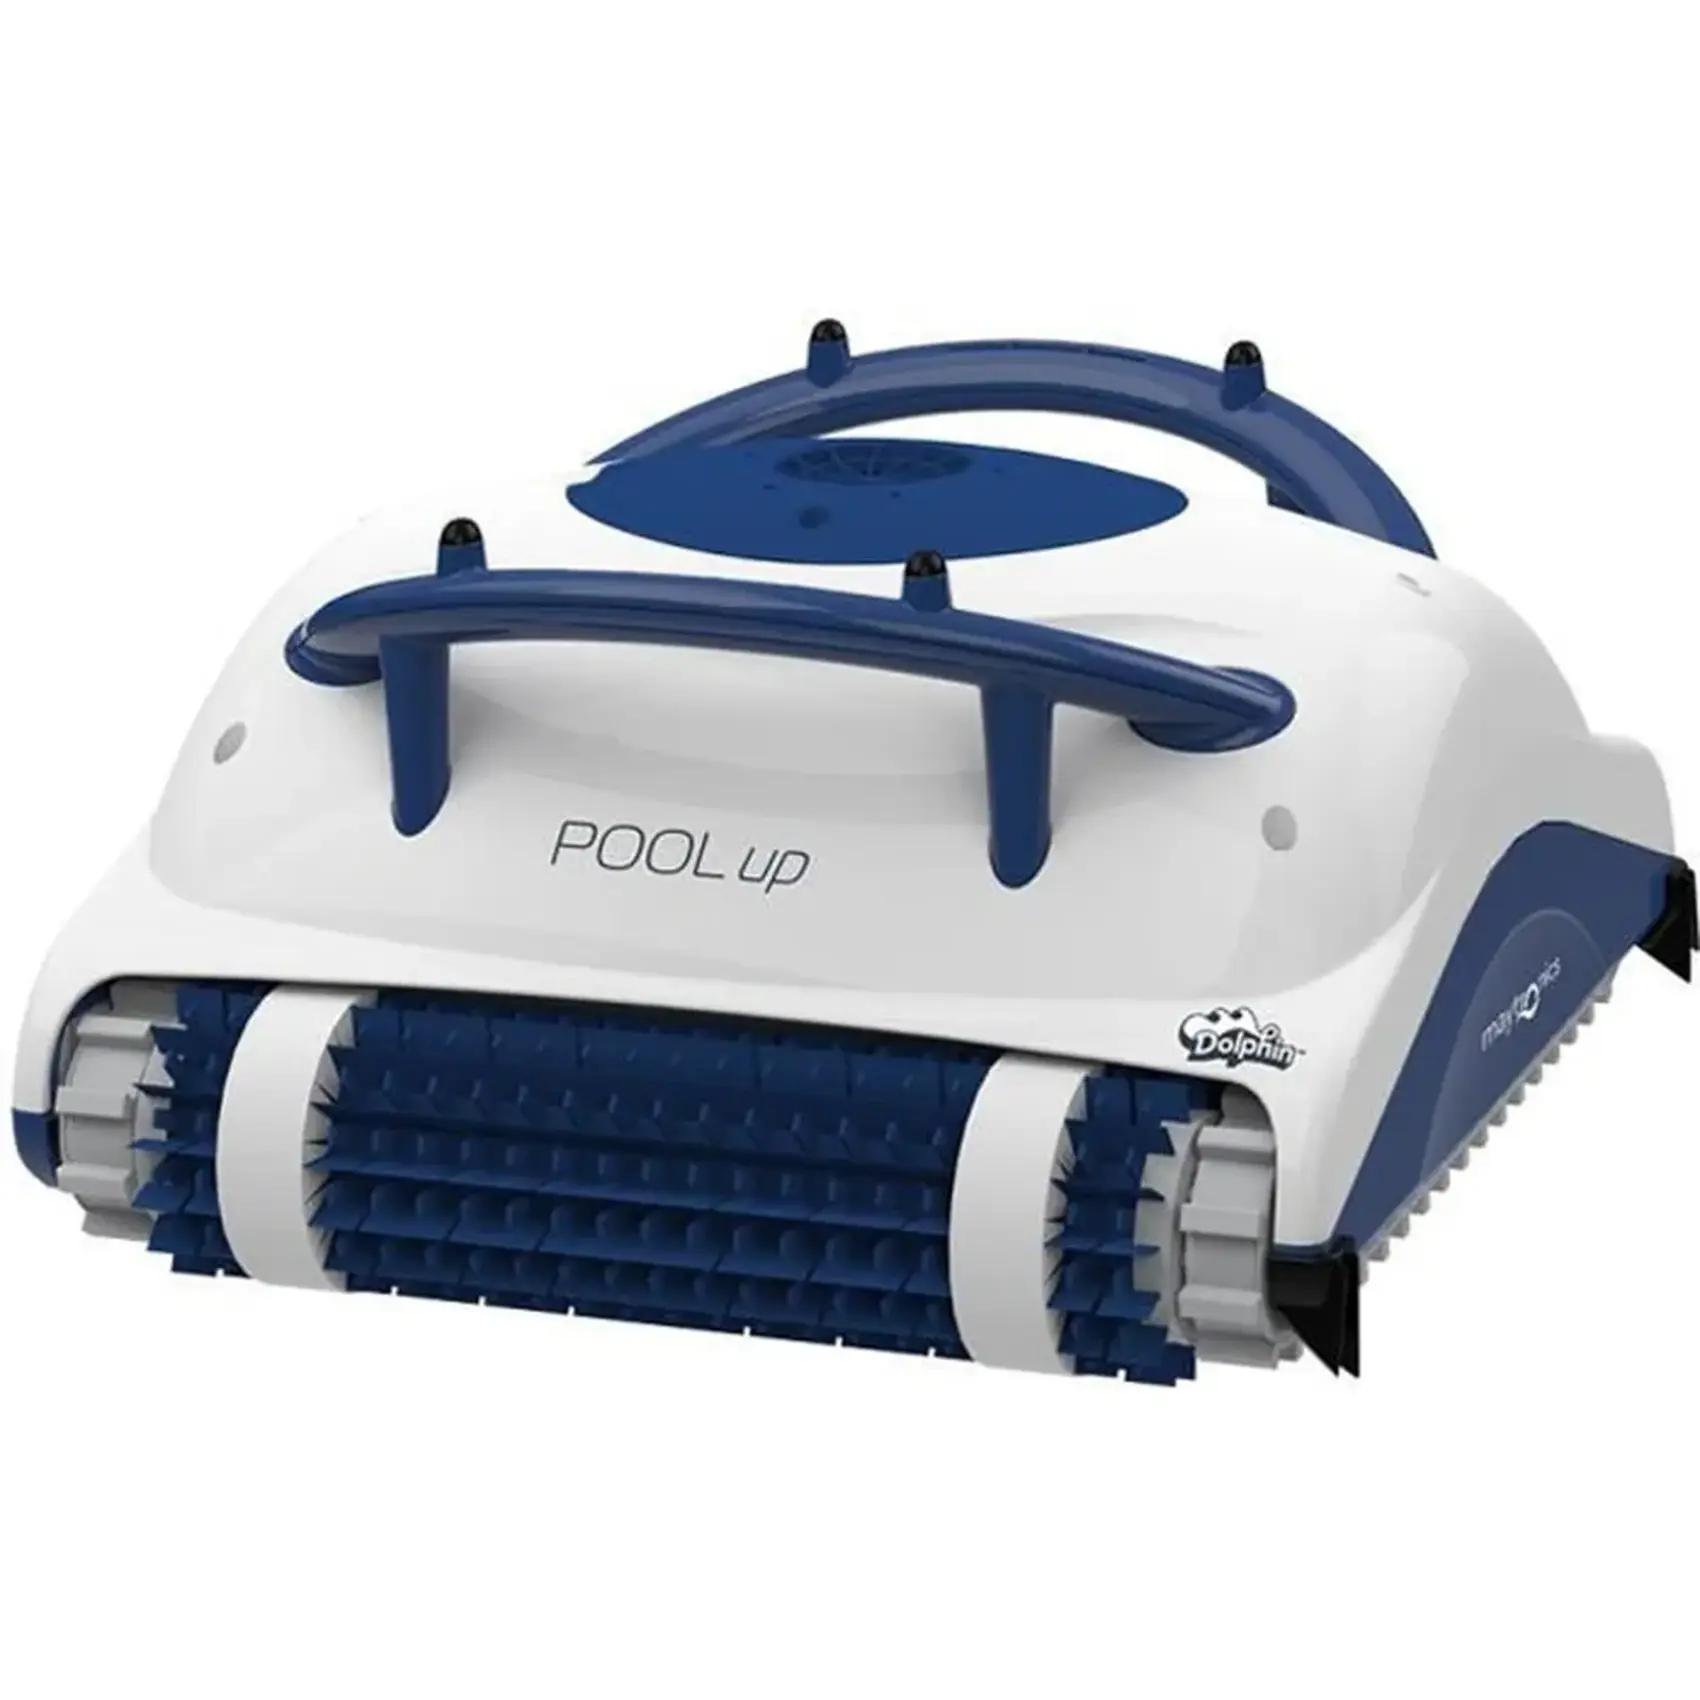 Le prix du robot de piscine électrique DOLPHIN POOL UP chute de 170 €